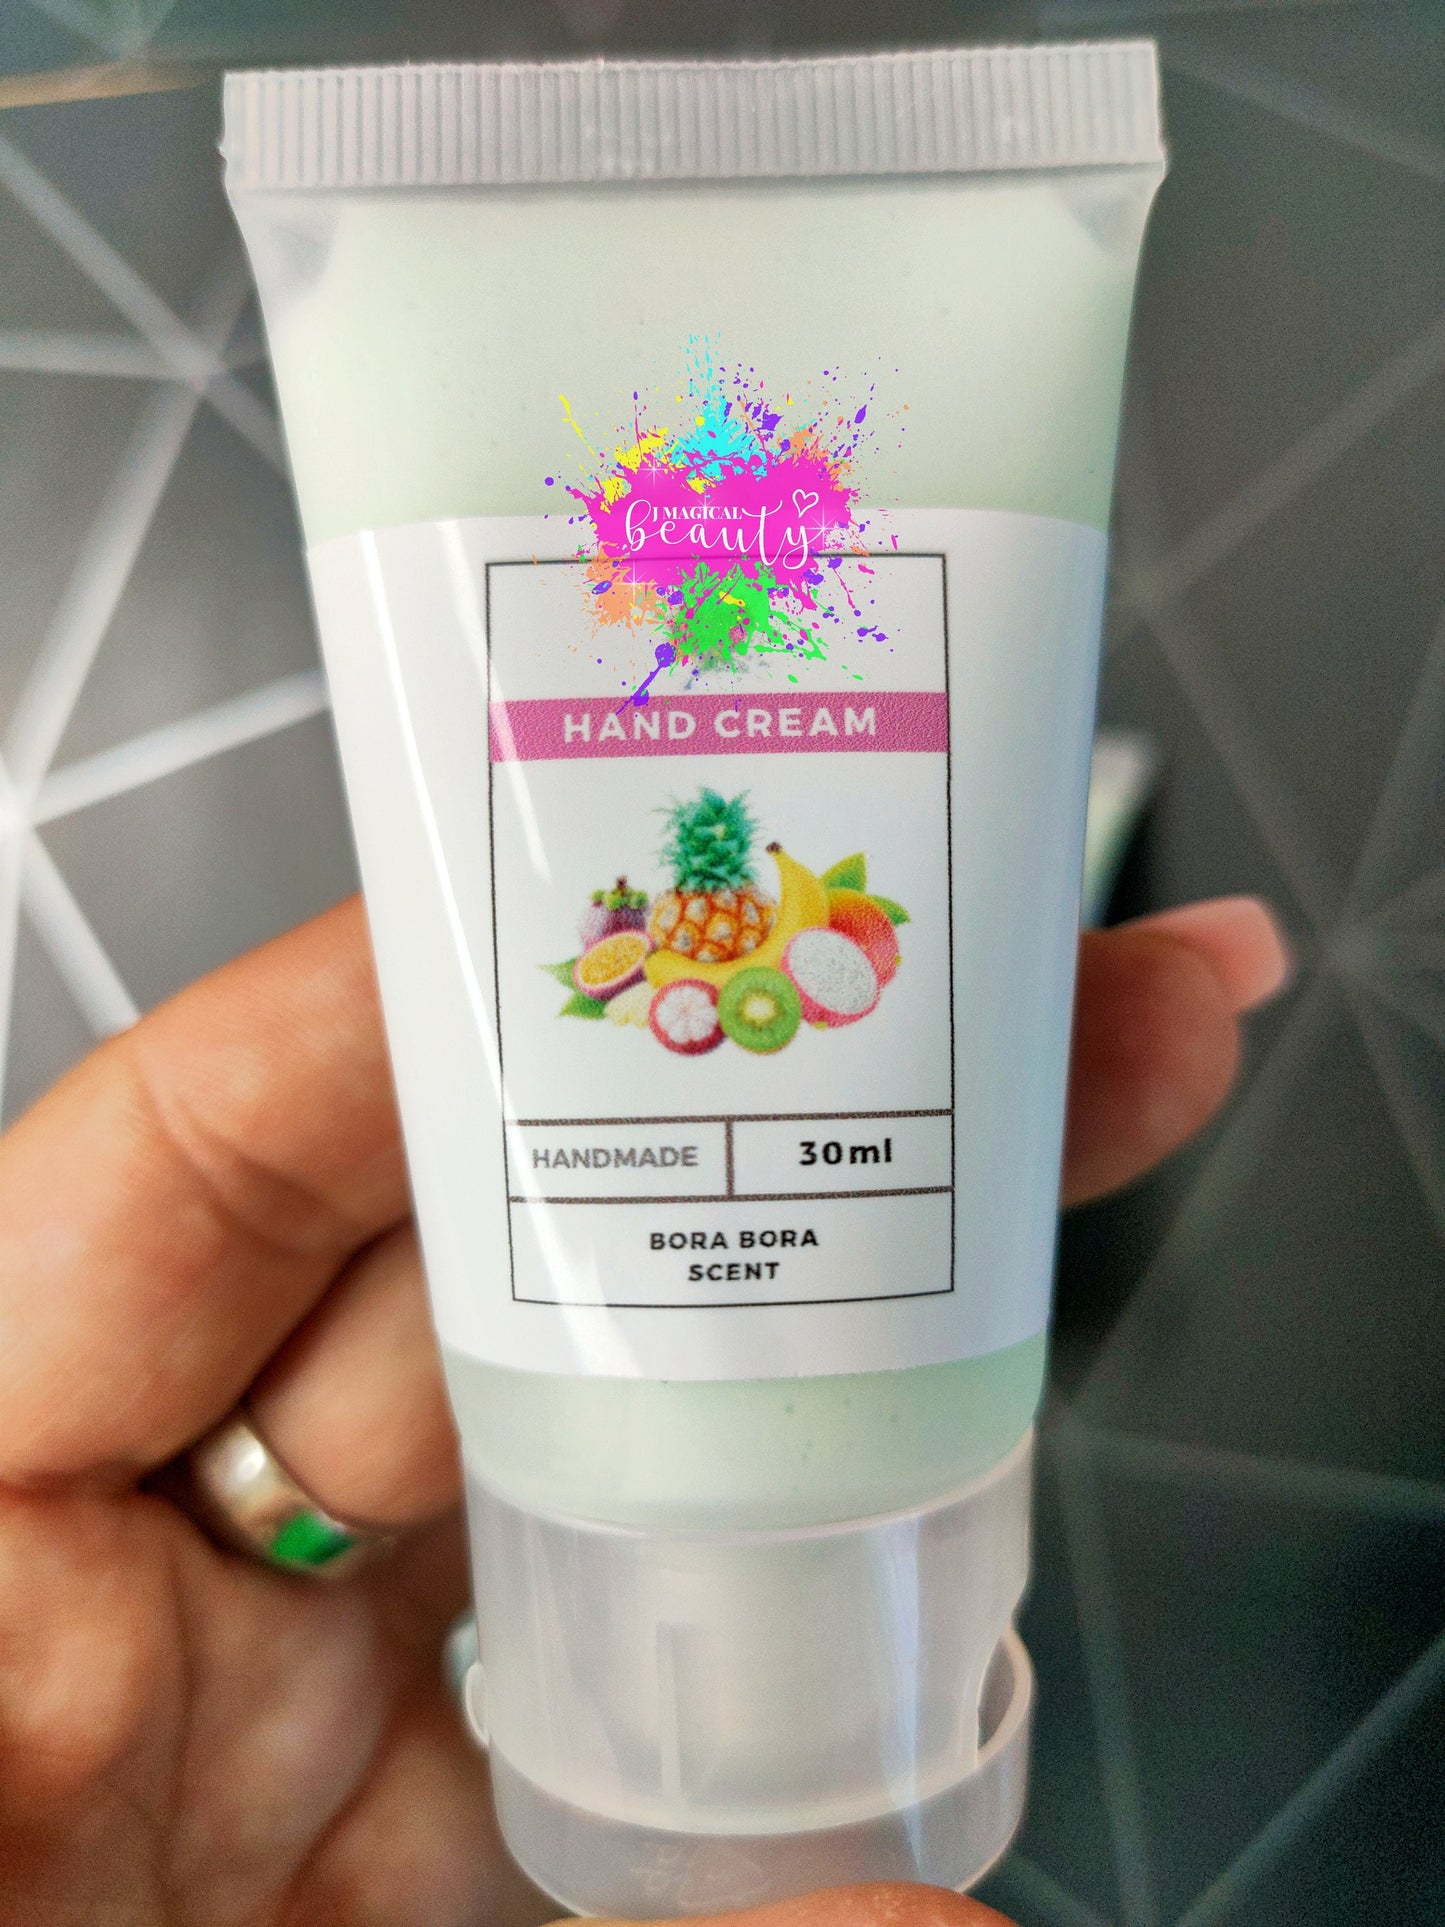 Hand Cream Bora Bora scent